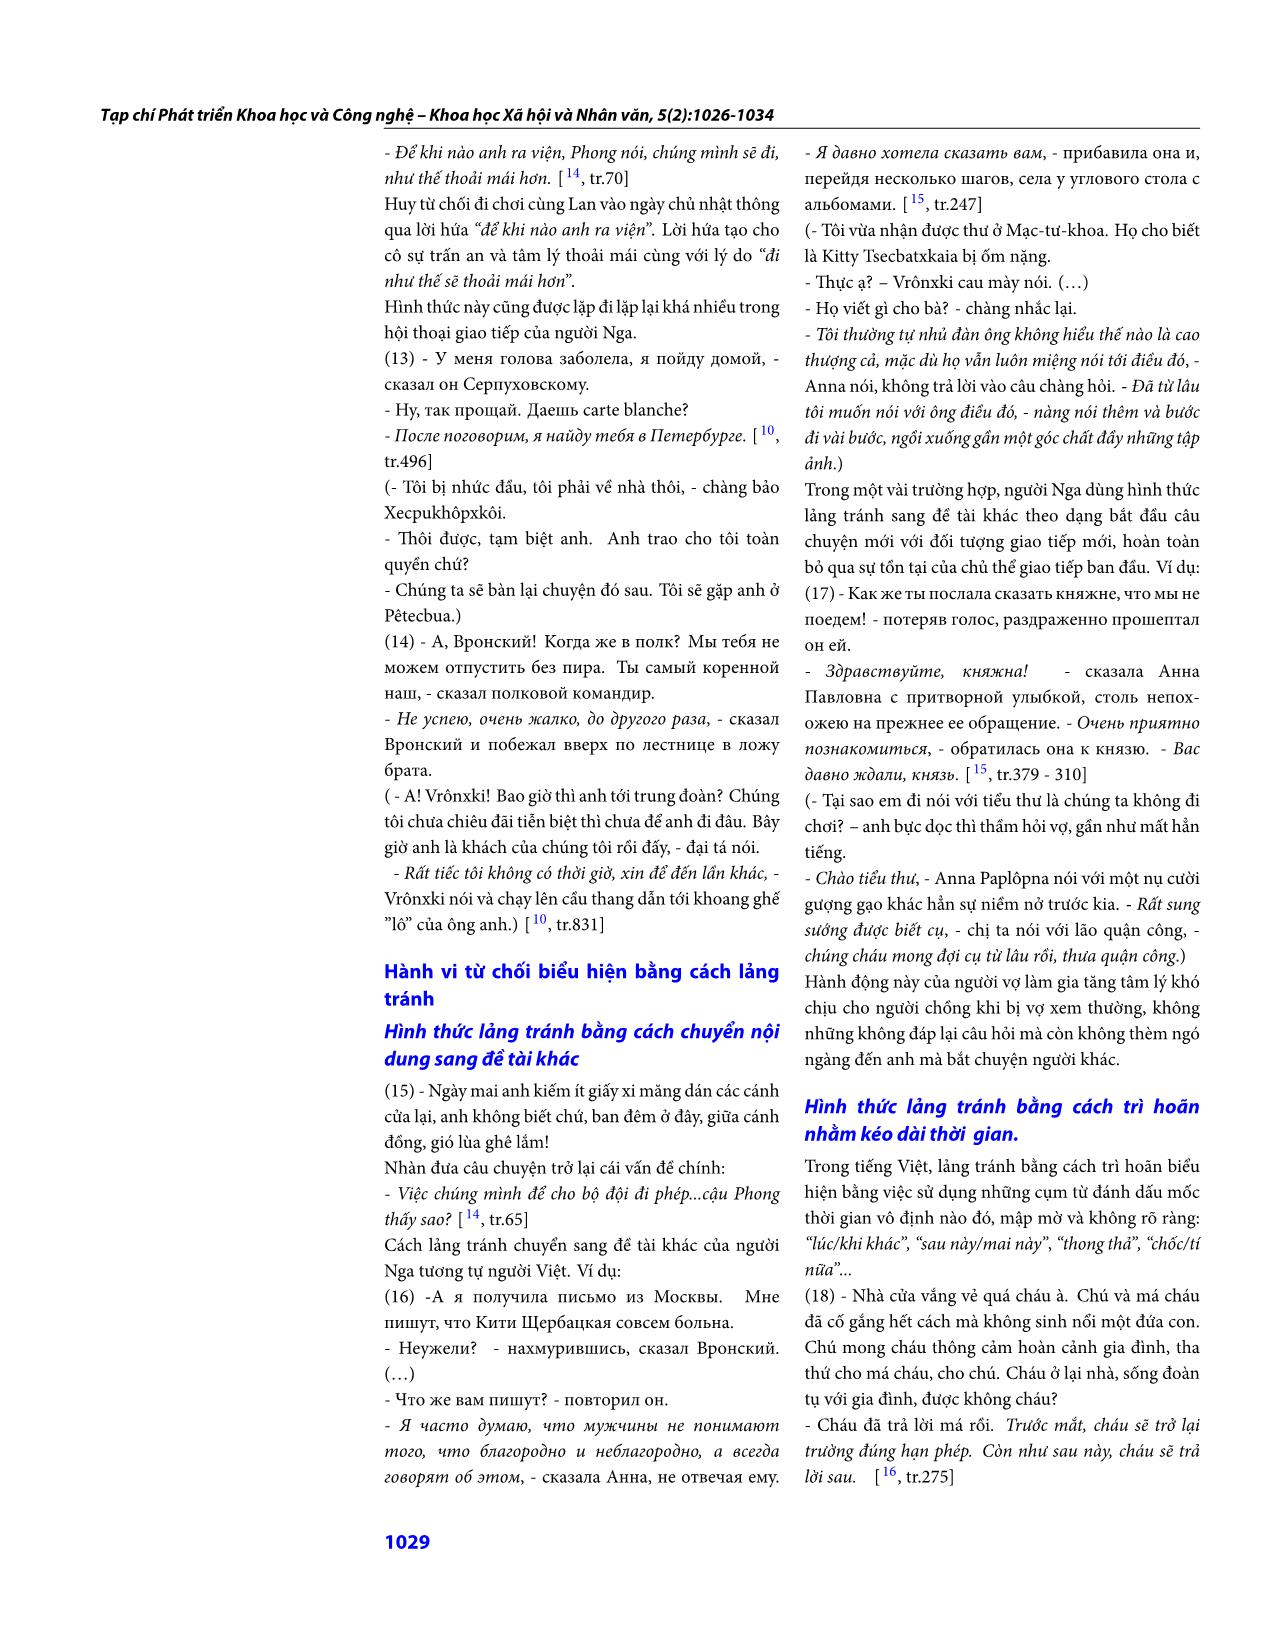 Những biểu hiện của hành vi từ chối gián tiếp trong tiếng Việt (có so với tiếng Nga) trang 4